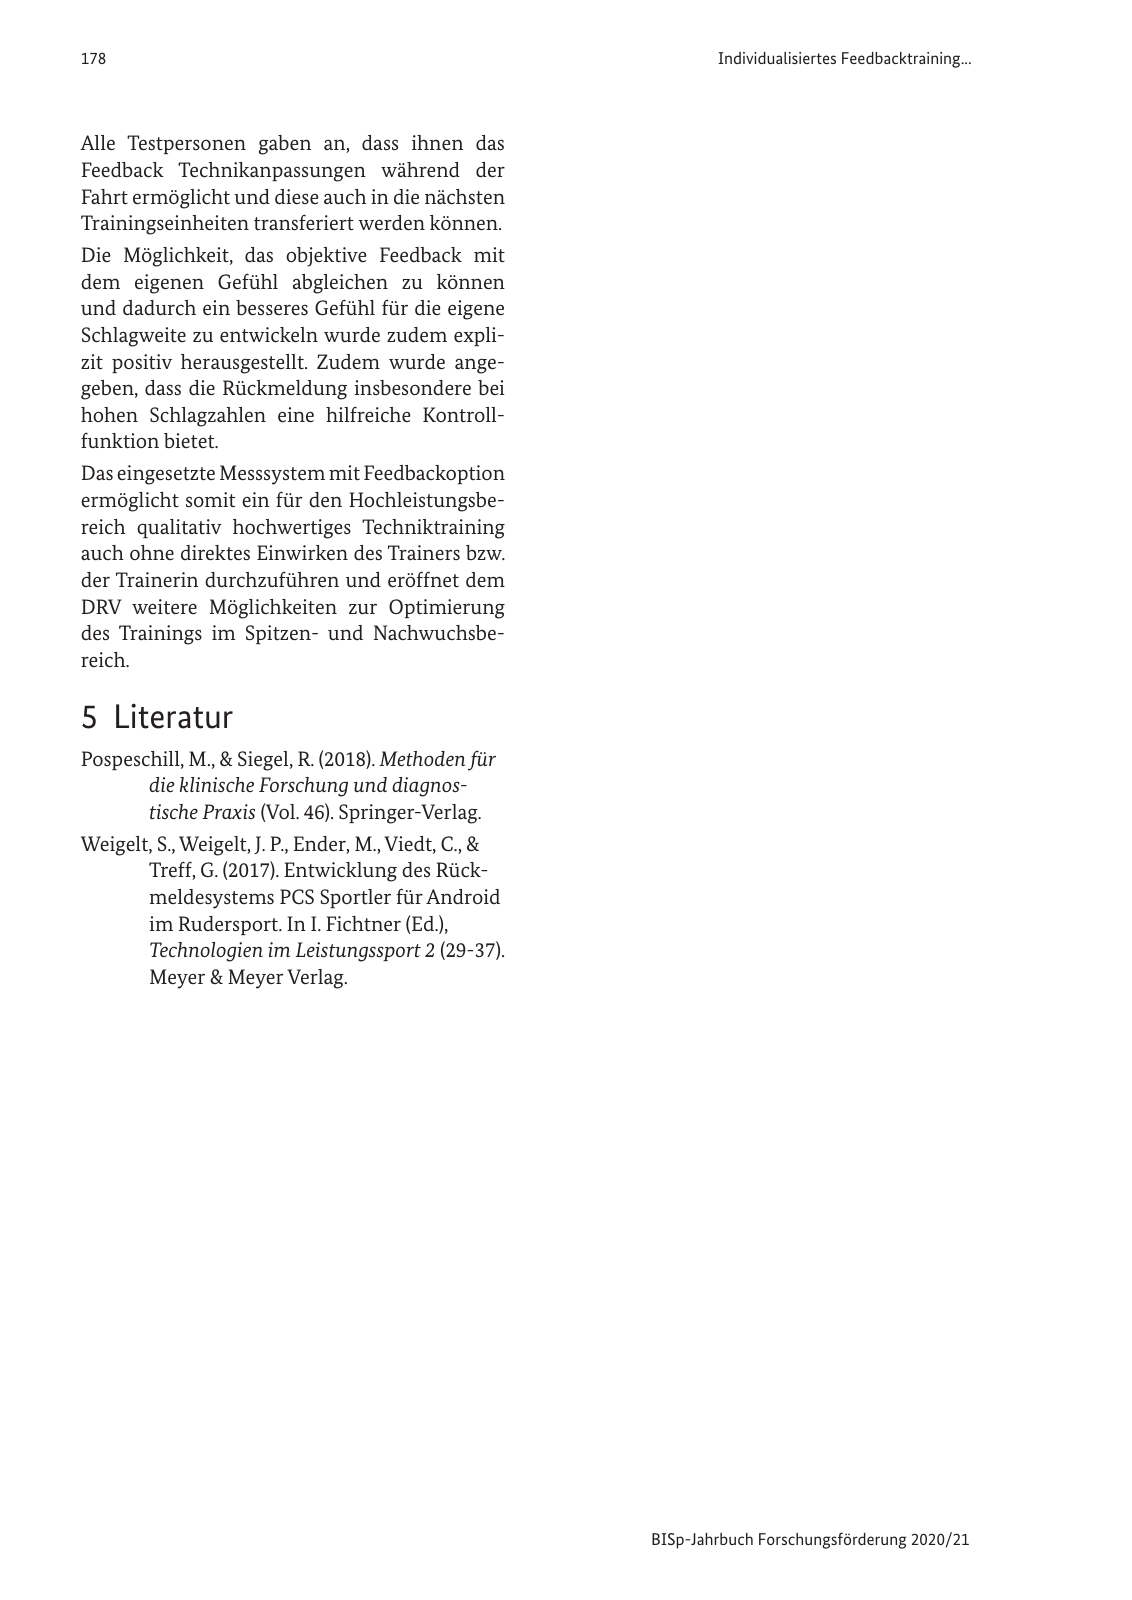 Vorschau BISp-Jahrbuch 2020/21 Seite 180